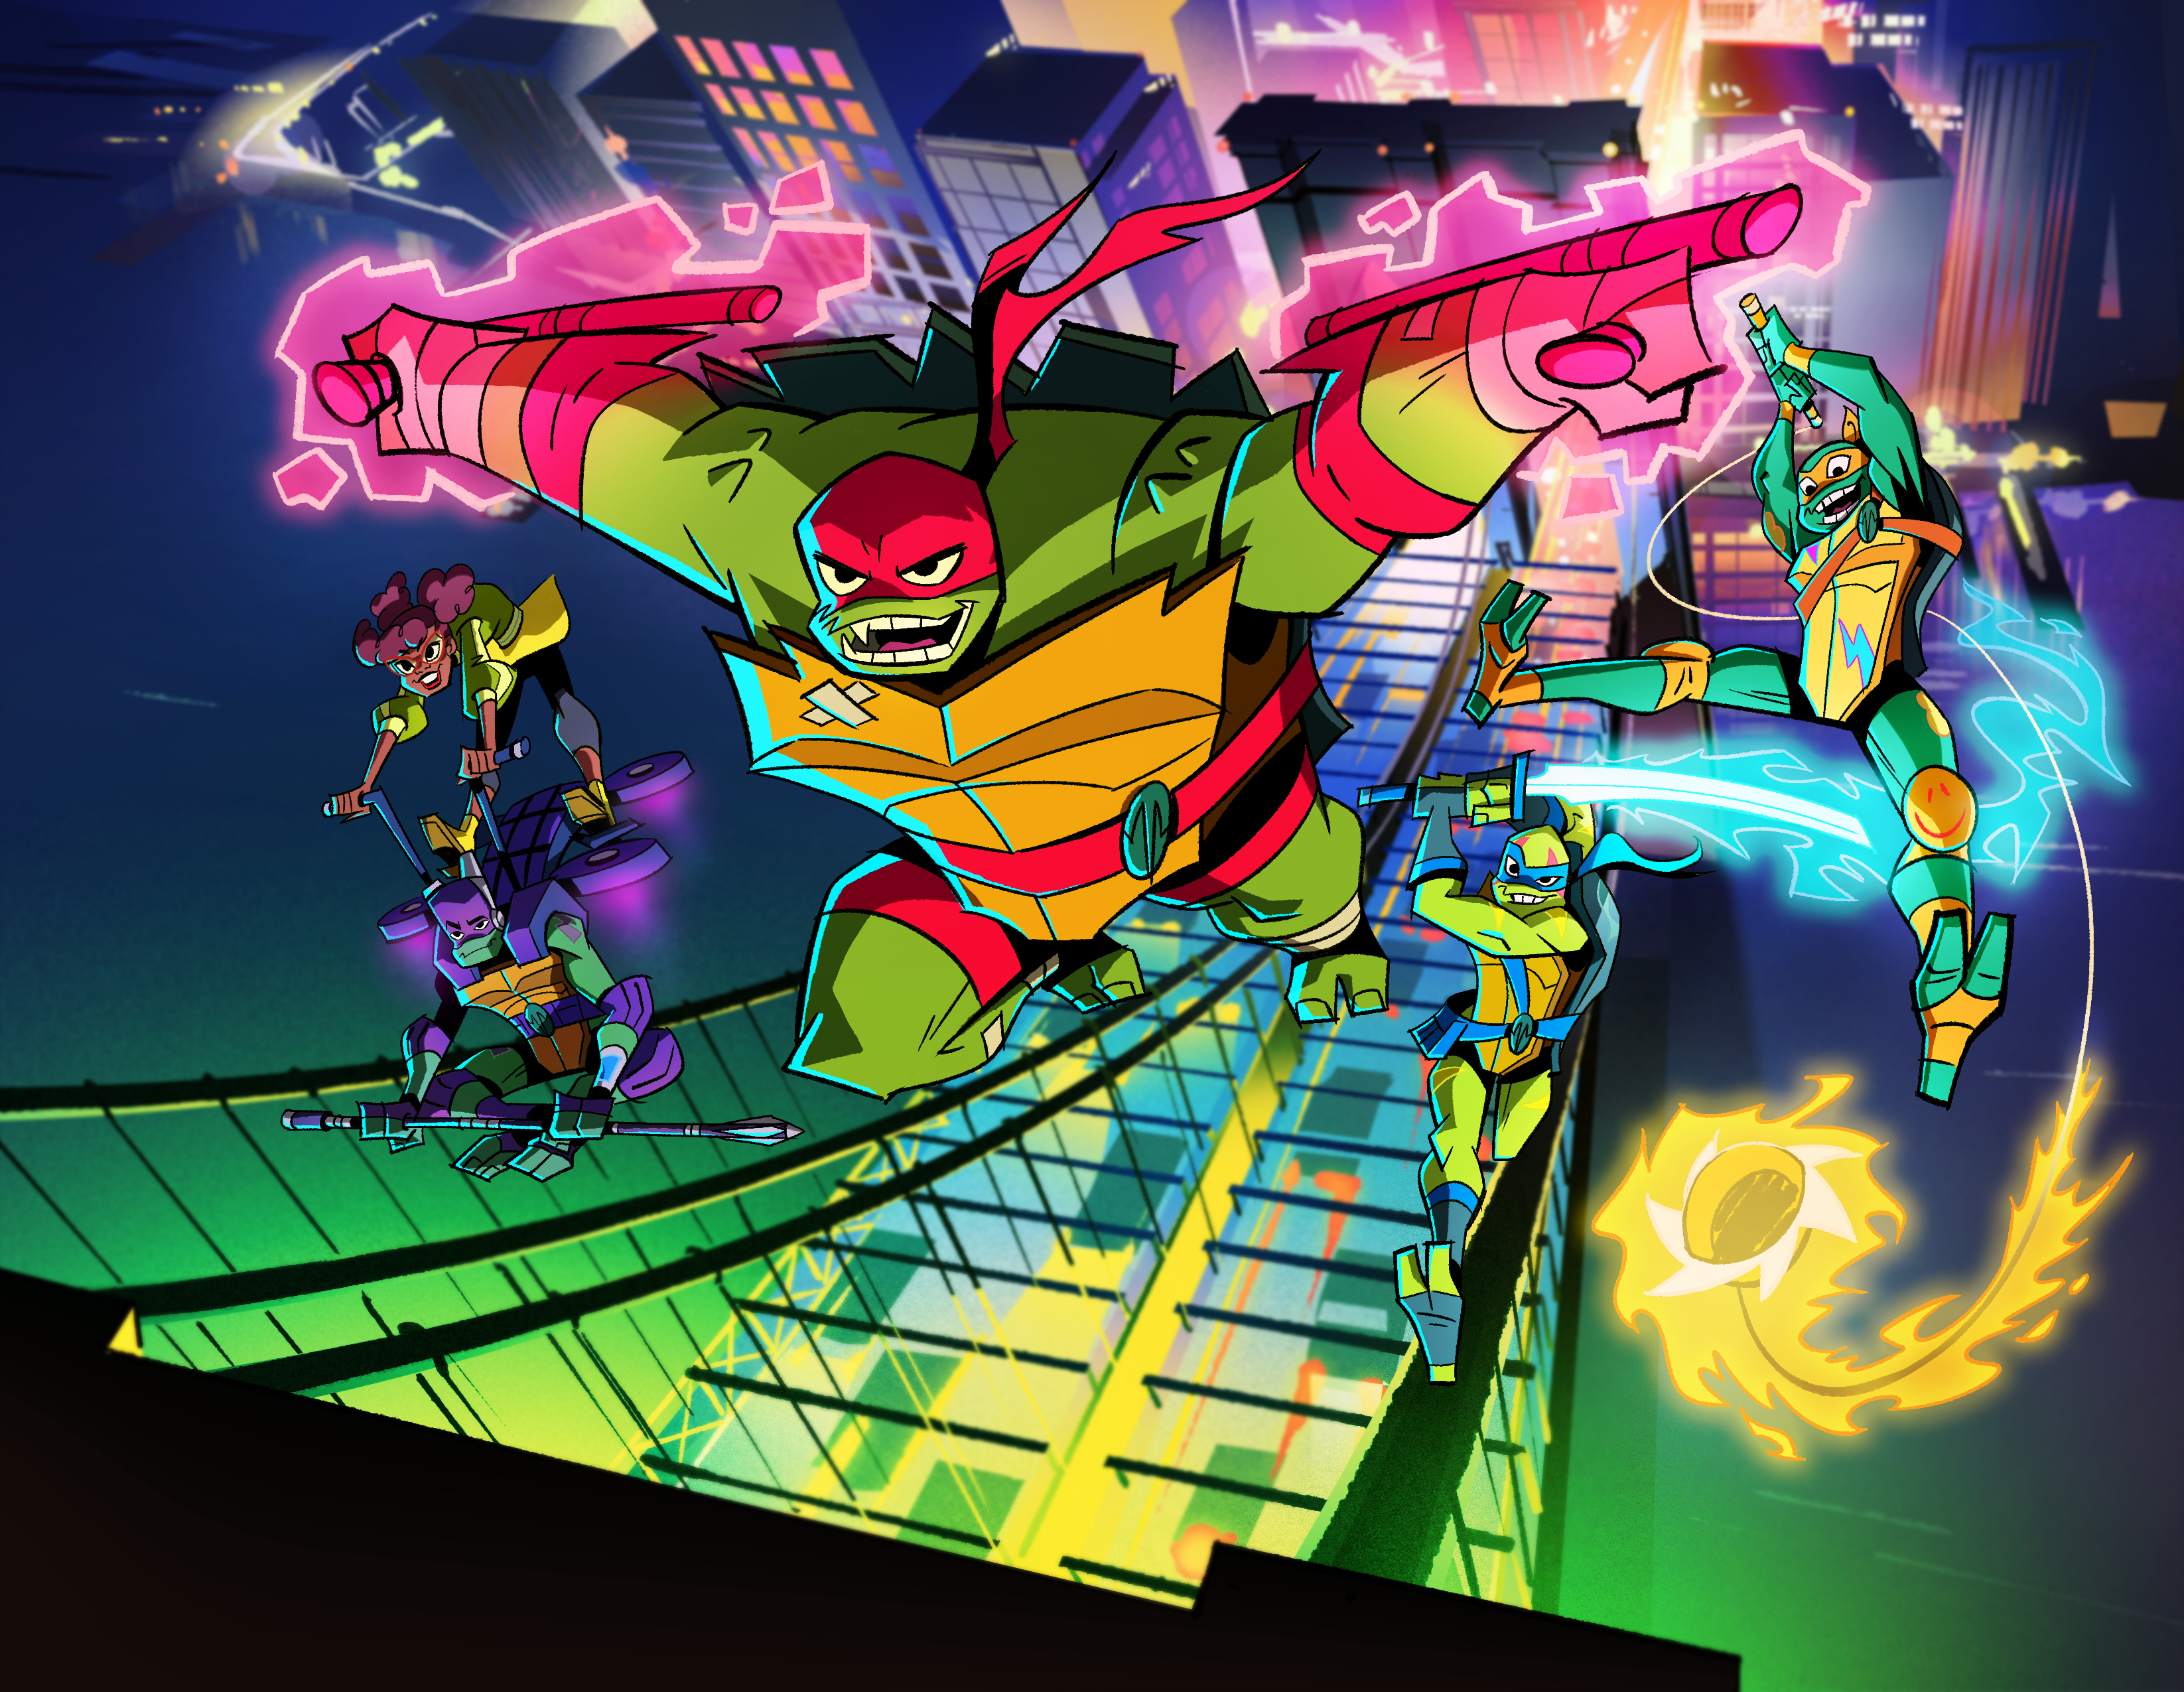 Rise of the Teenage Mutant Ninja Turtles Character Art Revealed